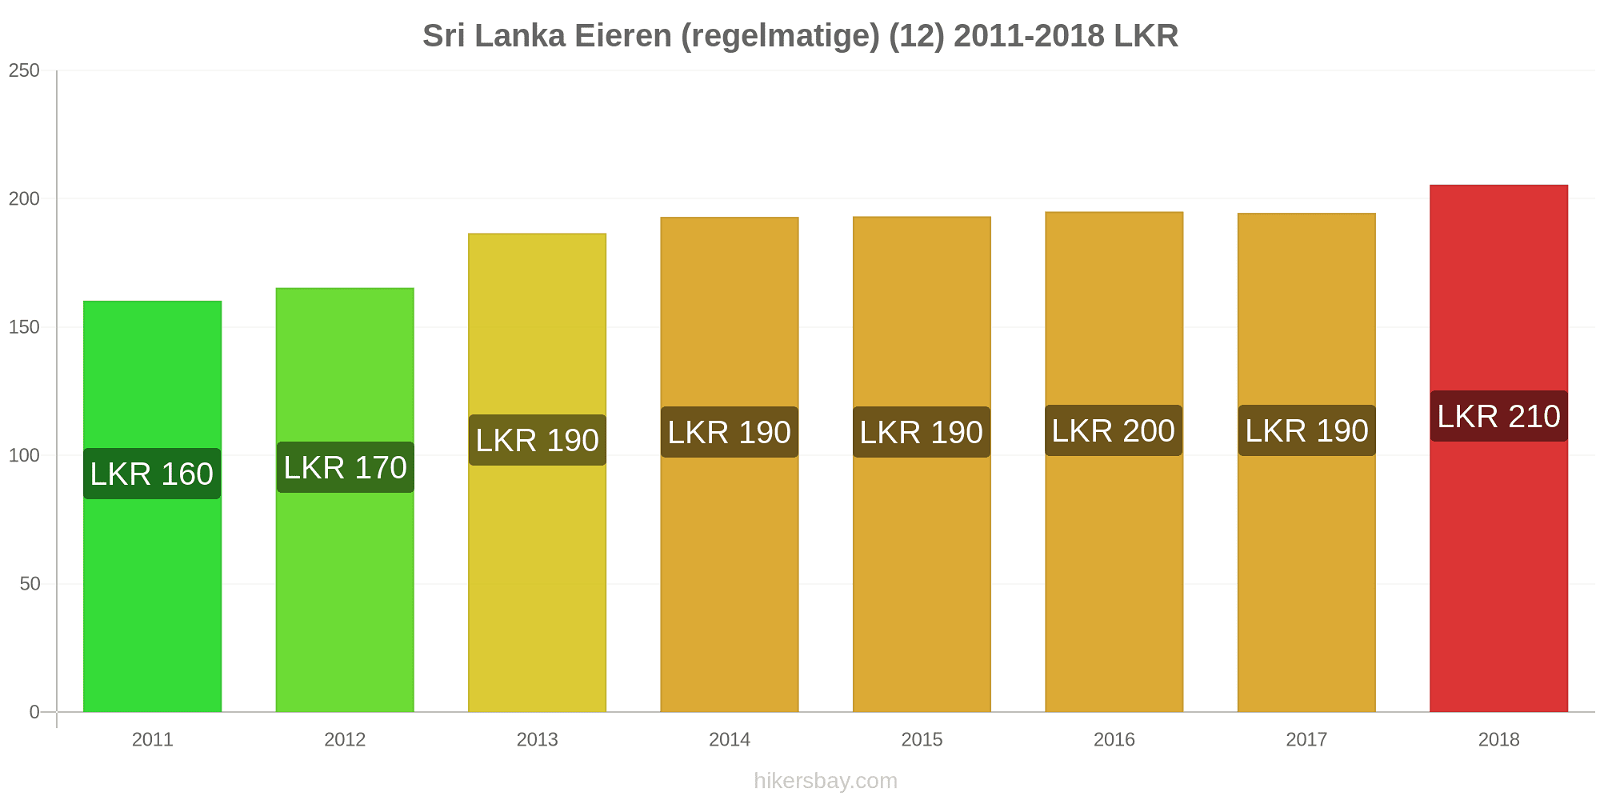 Sri Lanka prijswijzigingen Eieren (regelmatig) (12) hikersbay.com